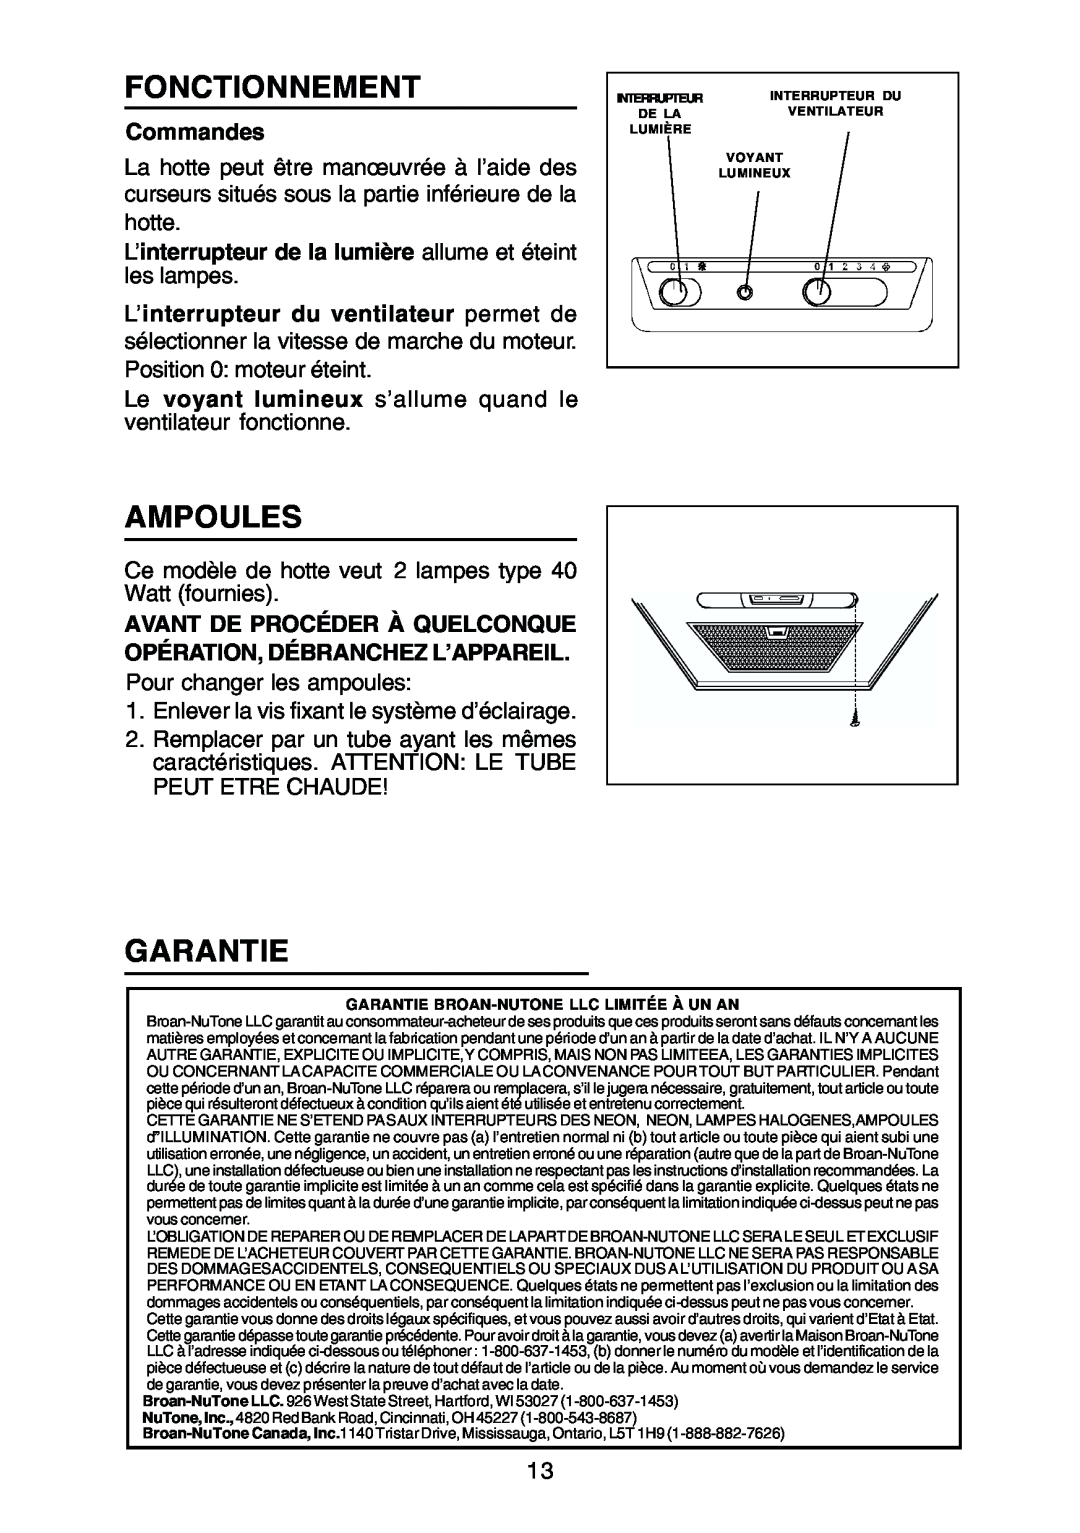 Rangemaster RM50000 Series manual Fonctionnement, Ampoules, Garantie, Commandes 